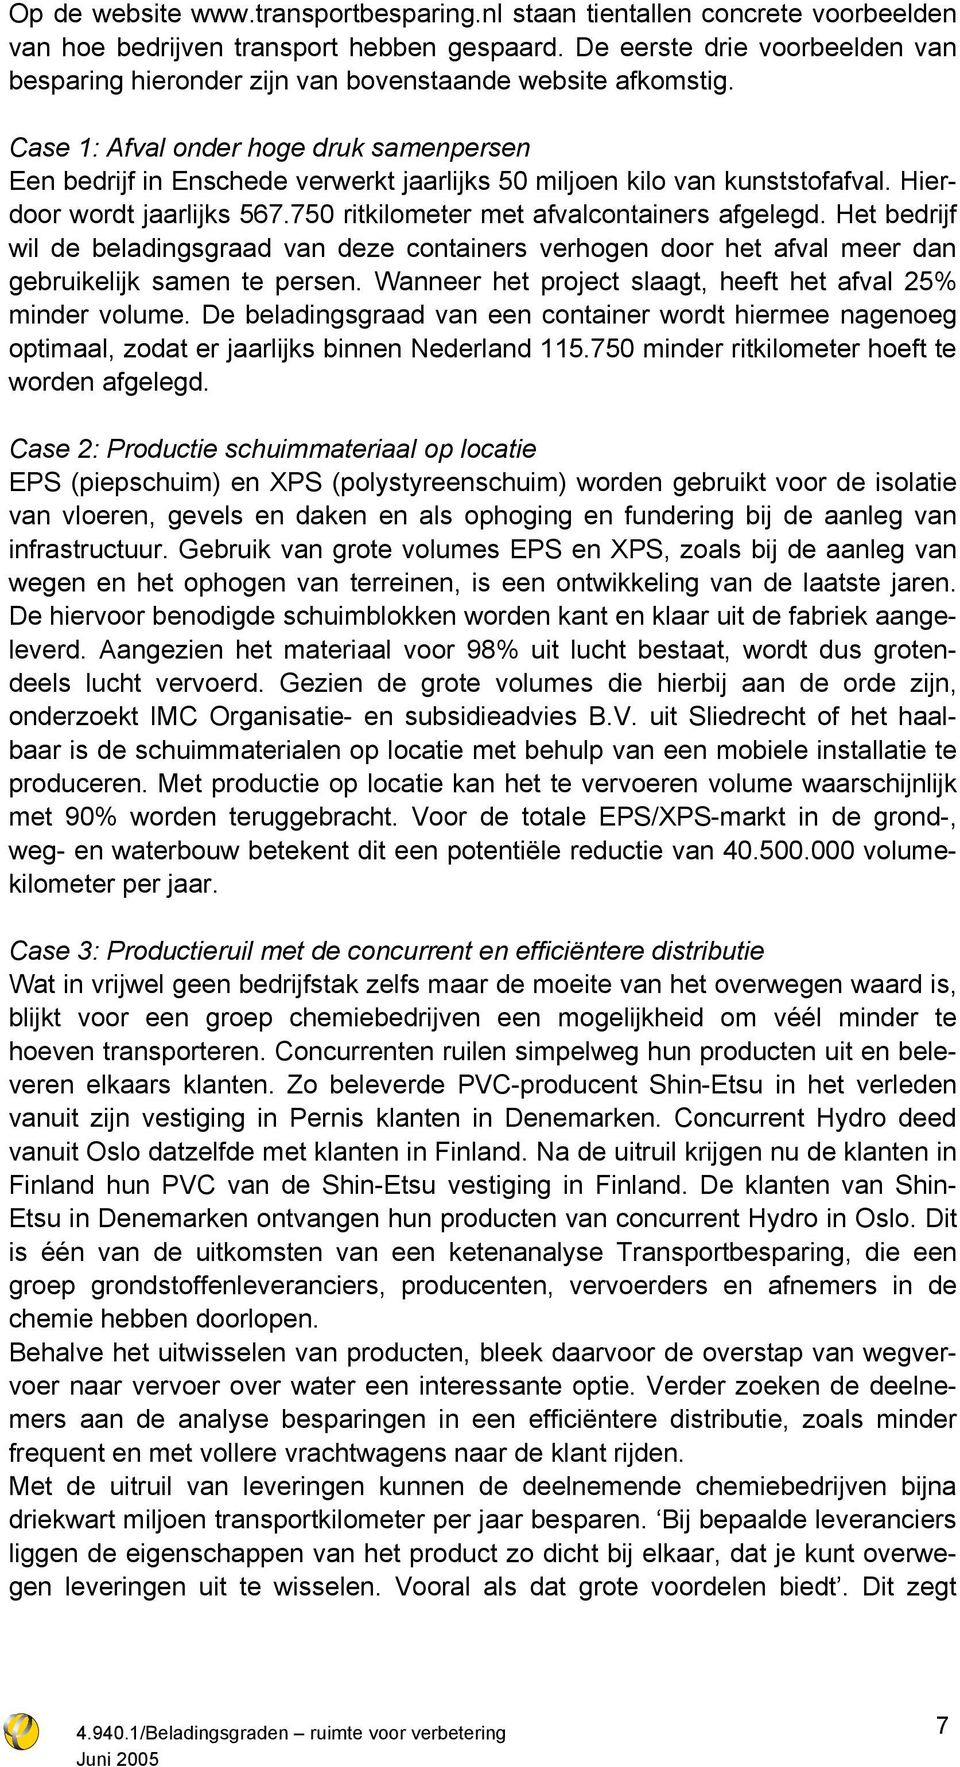 Case 1: Afval onder hoge druk samenpersen Een bedrijf in Enschede verwerkt jaarlijks 50 miljoen kilo van kunststofafval. Hierdoor wordt jaarlijks 567.750 ritkilometer met afvalcontainers afgelegd.